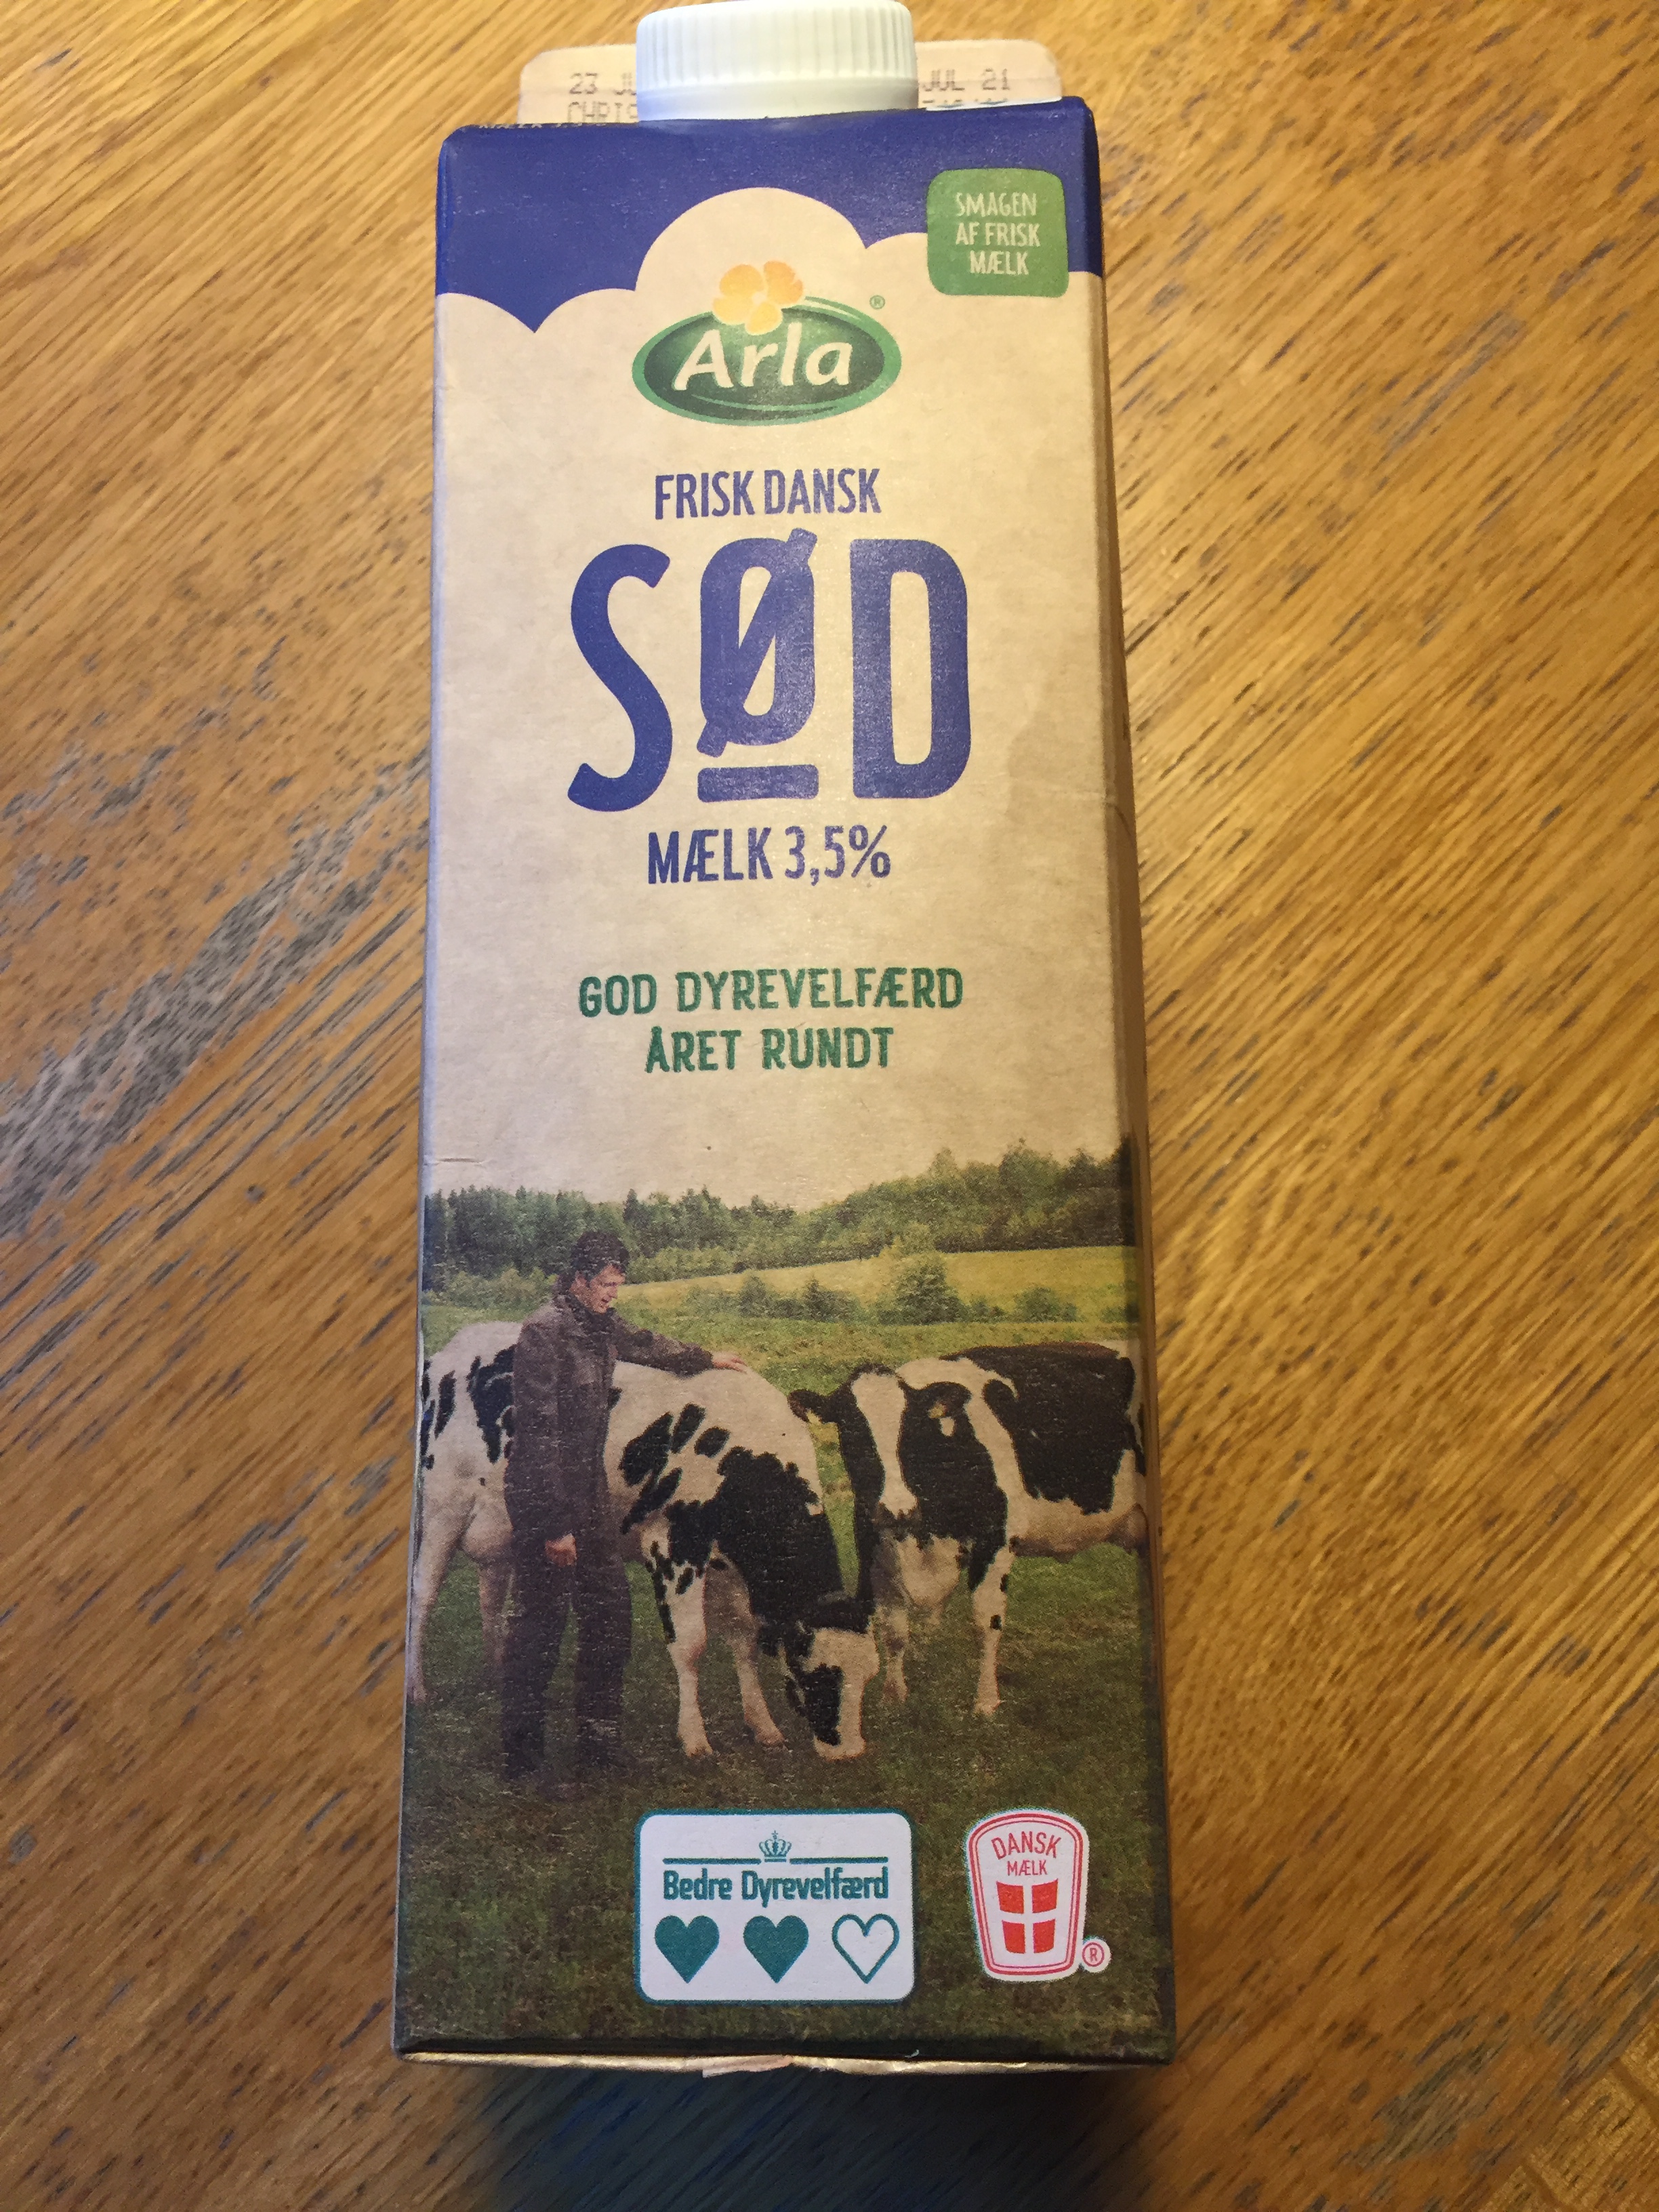 Dänische Milch 1 Liter für 1,79 €, und nur konventionell gemolken